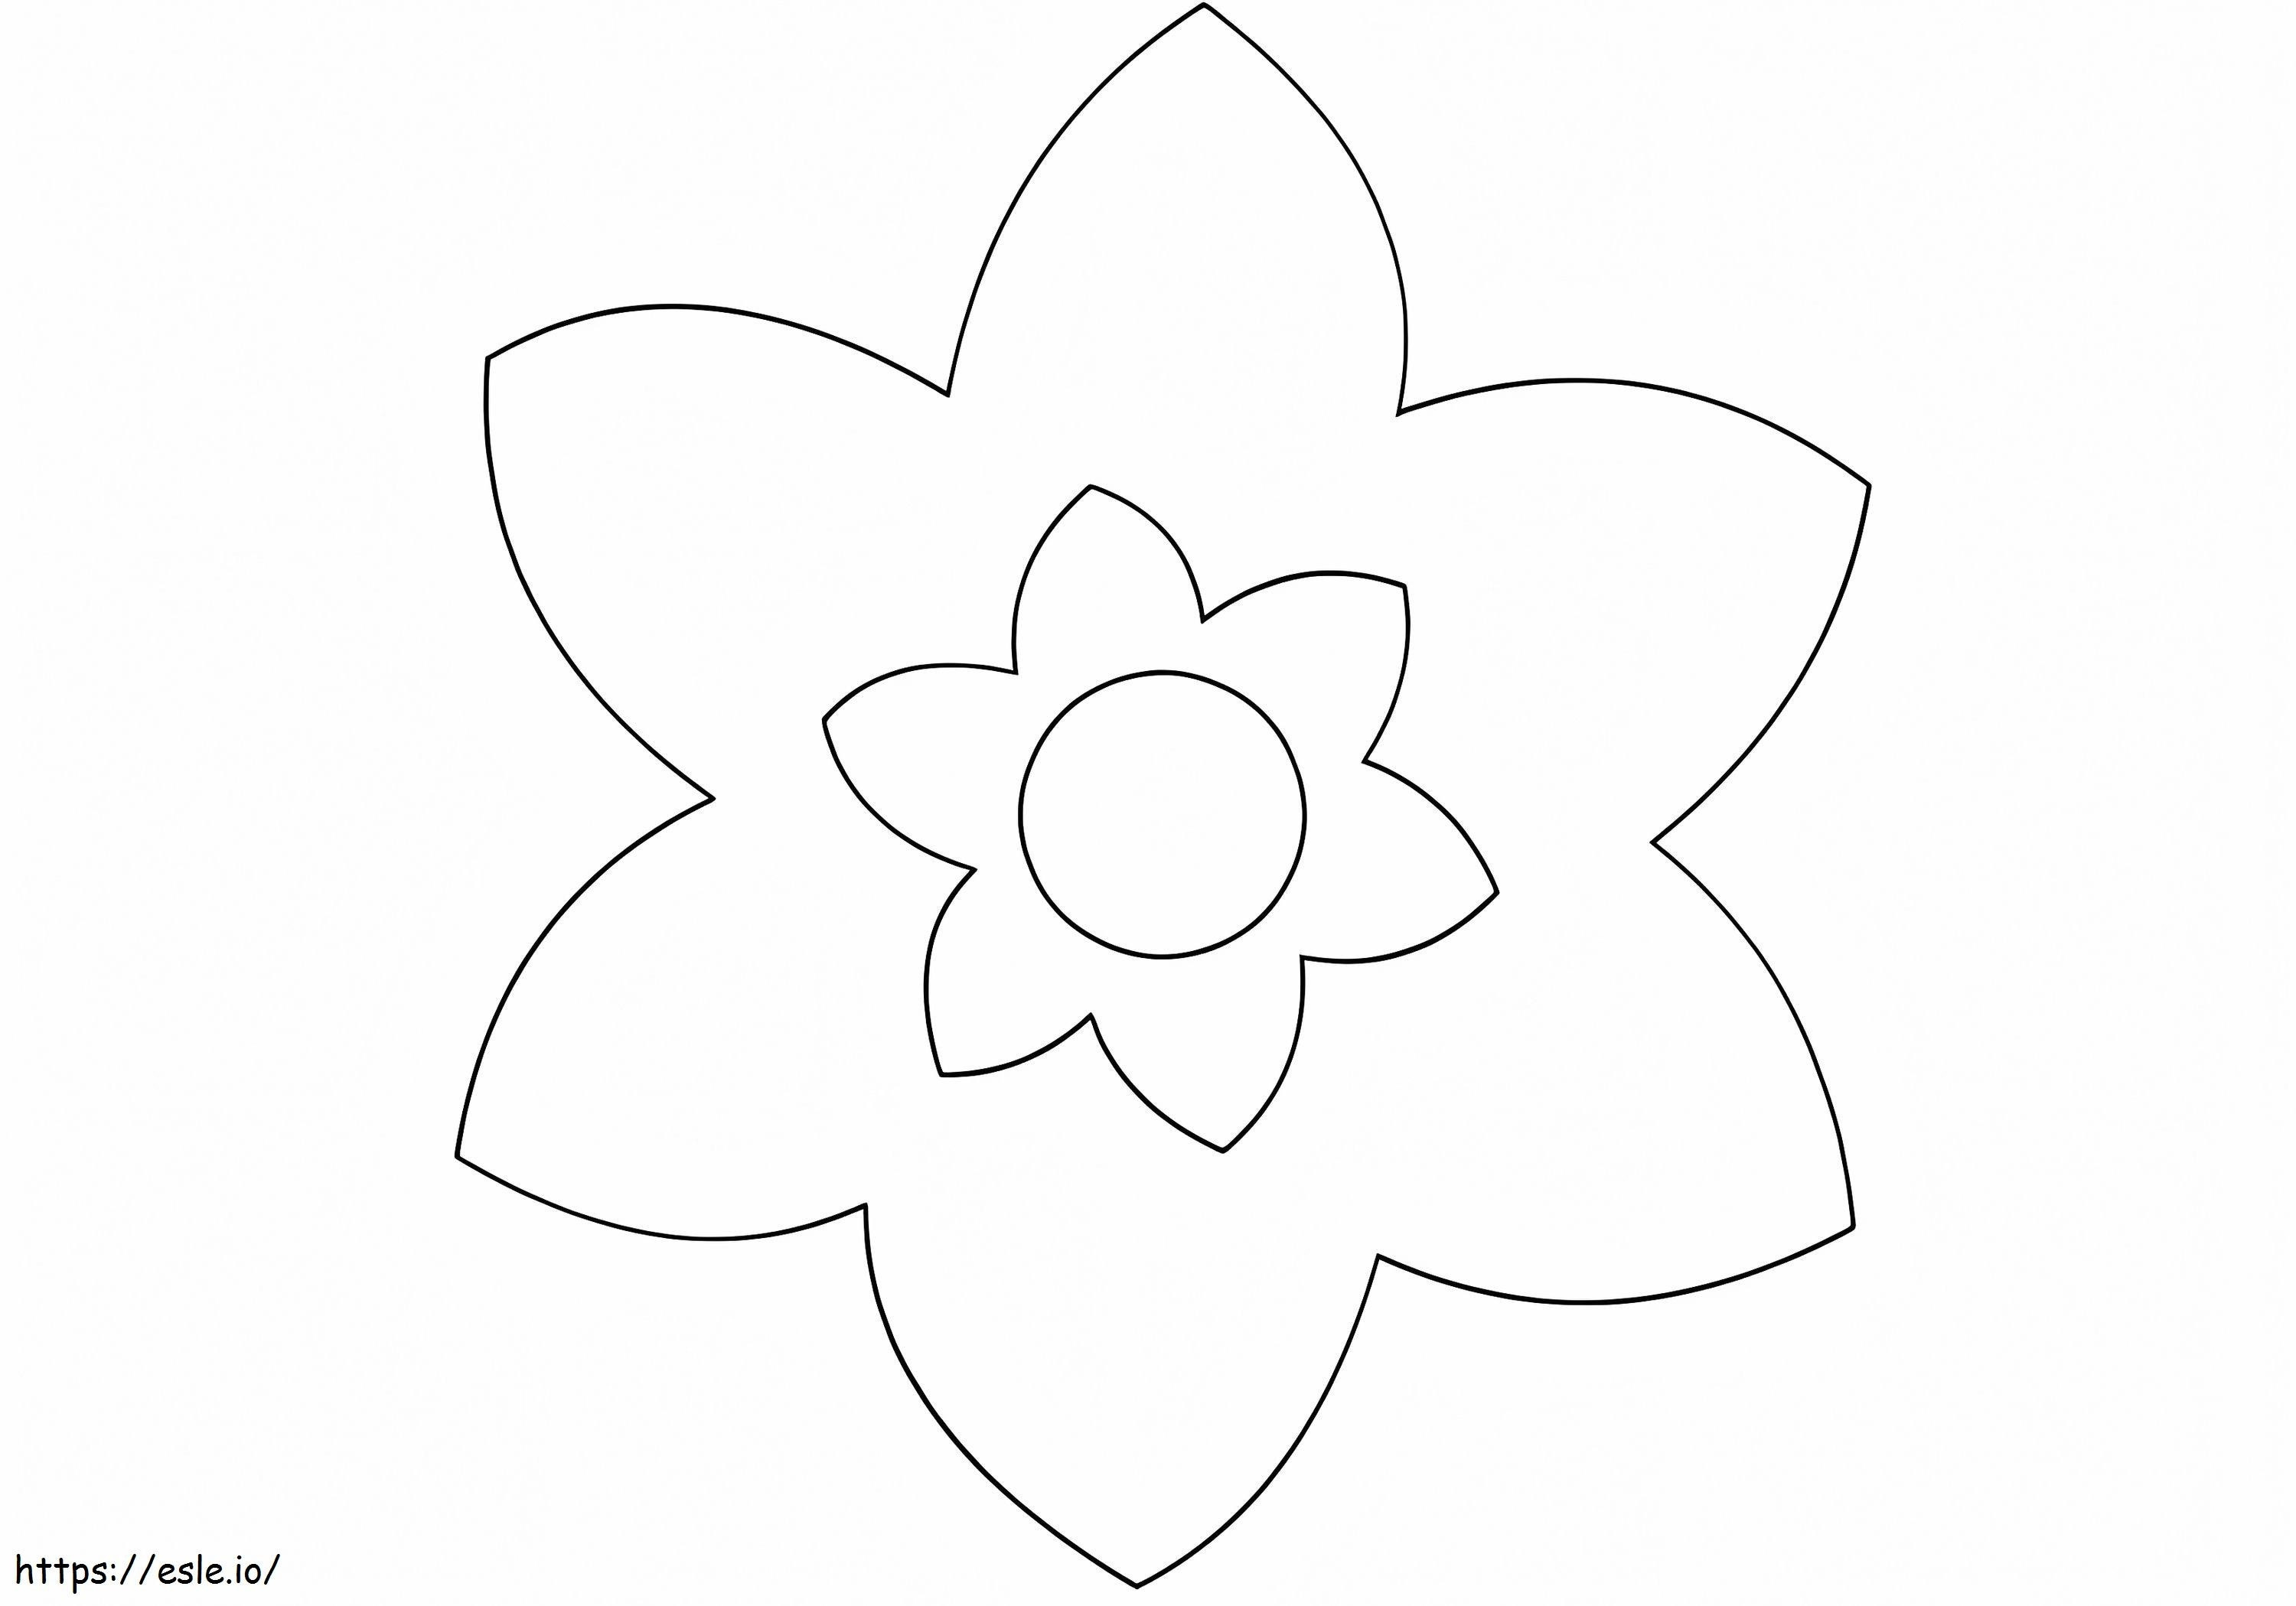 Coloriage Fleur simple pour les enfants d'âge préscolaire à imprimer dessin